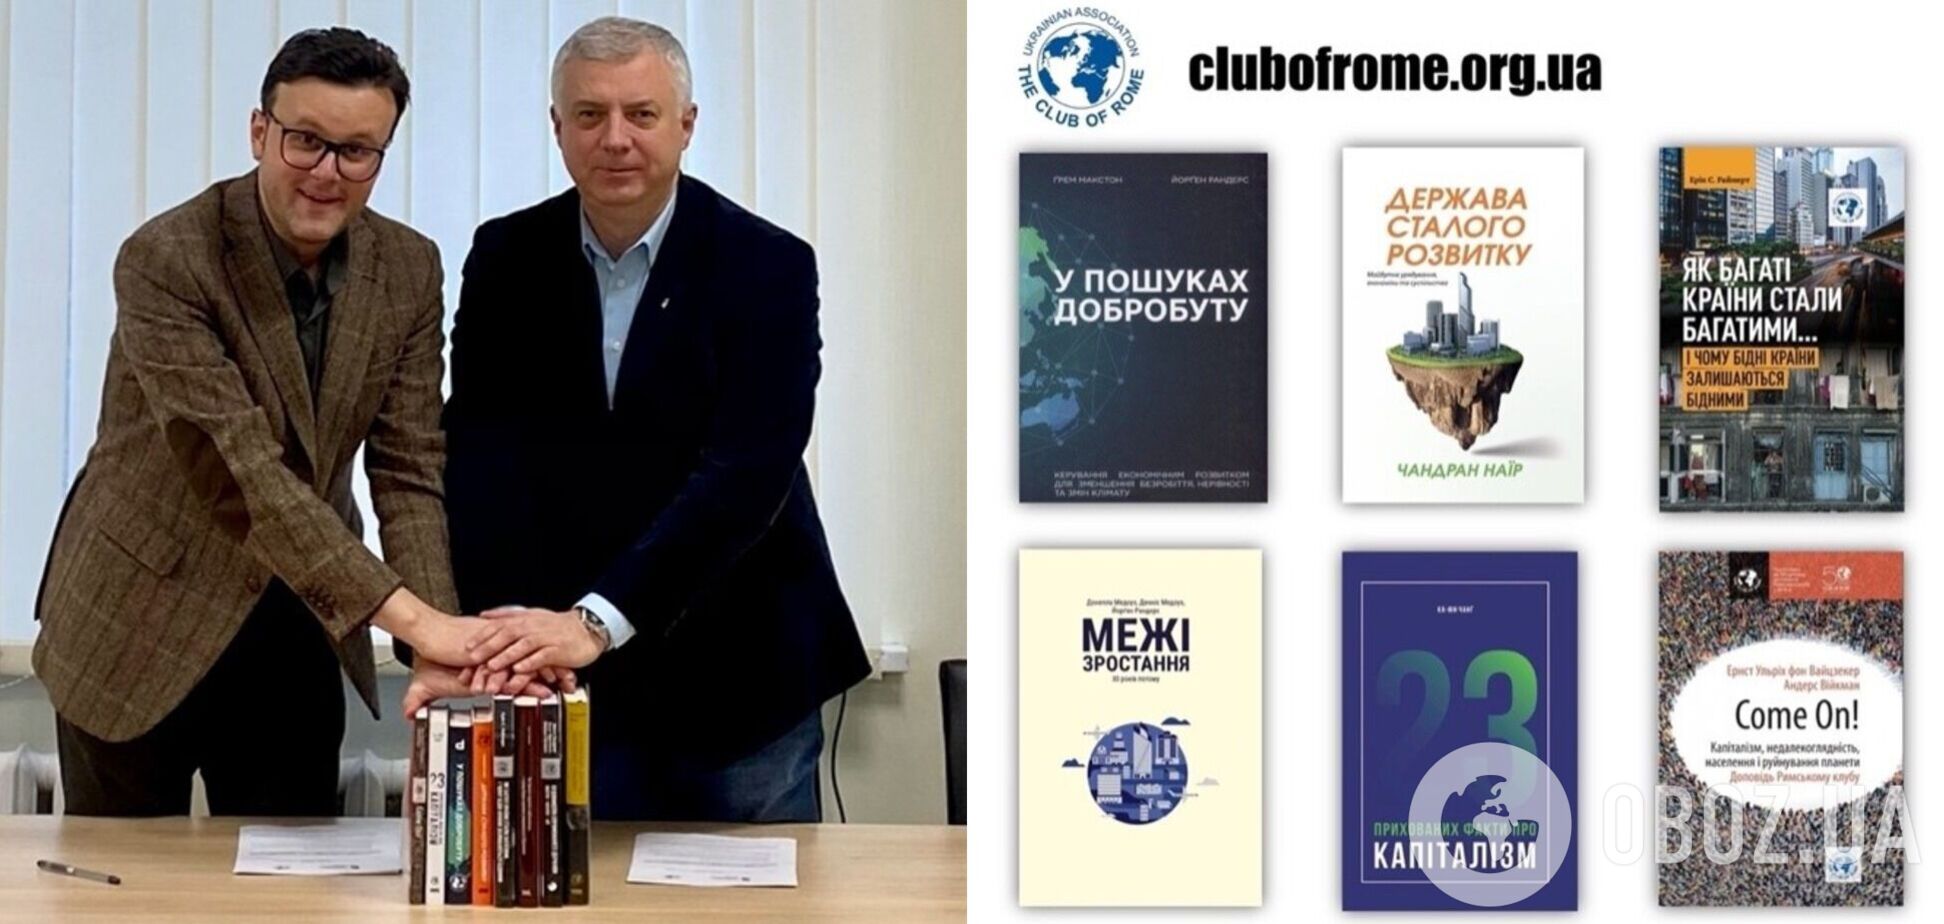 Українська асоціація Римського клубу дарує книги університетам за сприяння НАЗЯВО